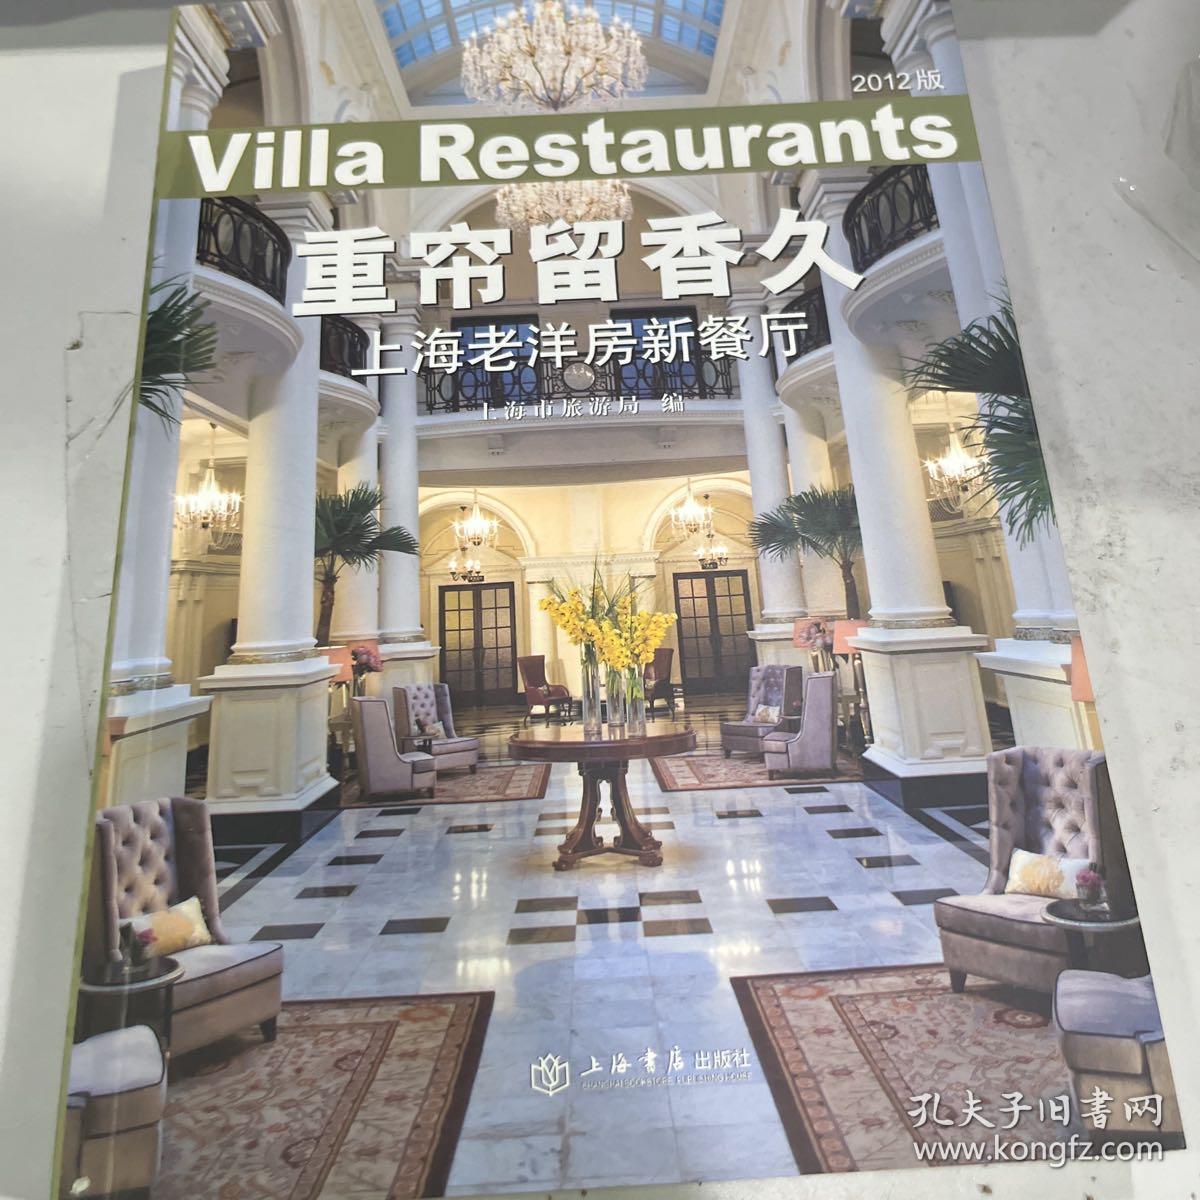 重帘留香久 : 上海老洋房新餐厅